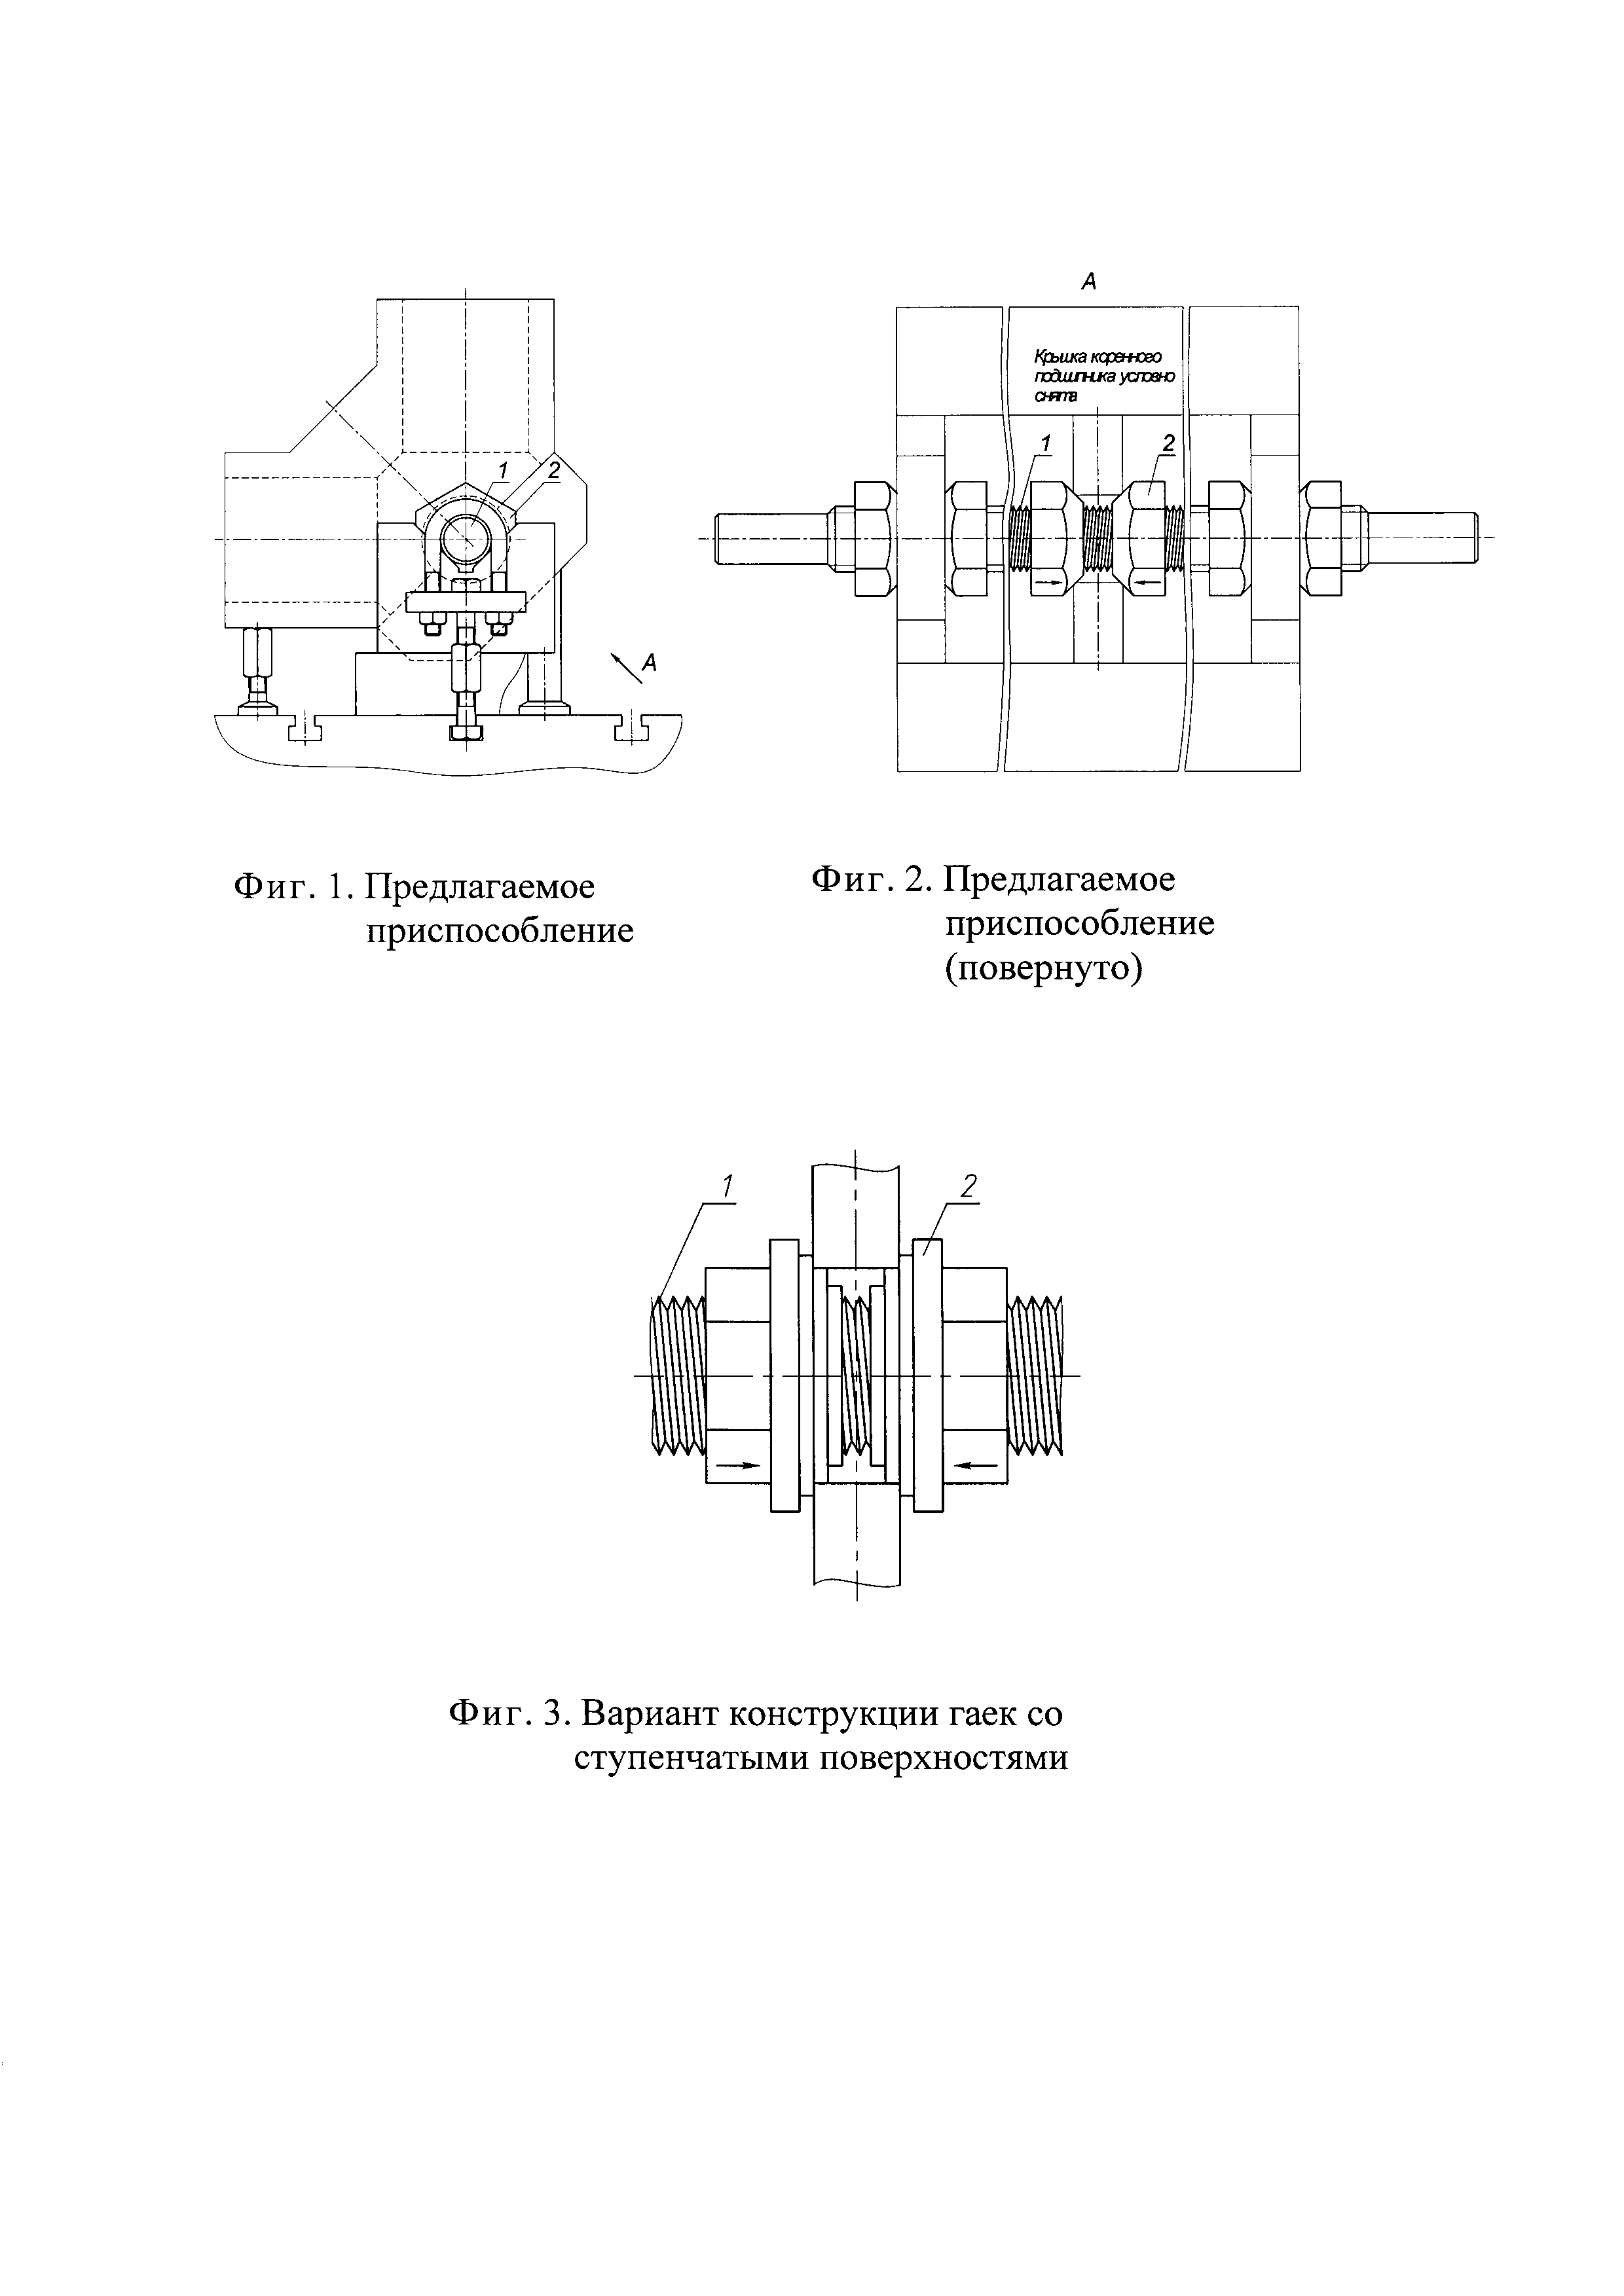 Универсальная оправка для установки V-образных блоков цилиндров